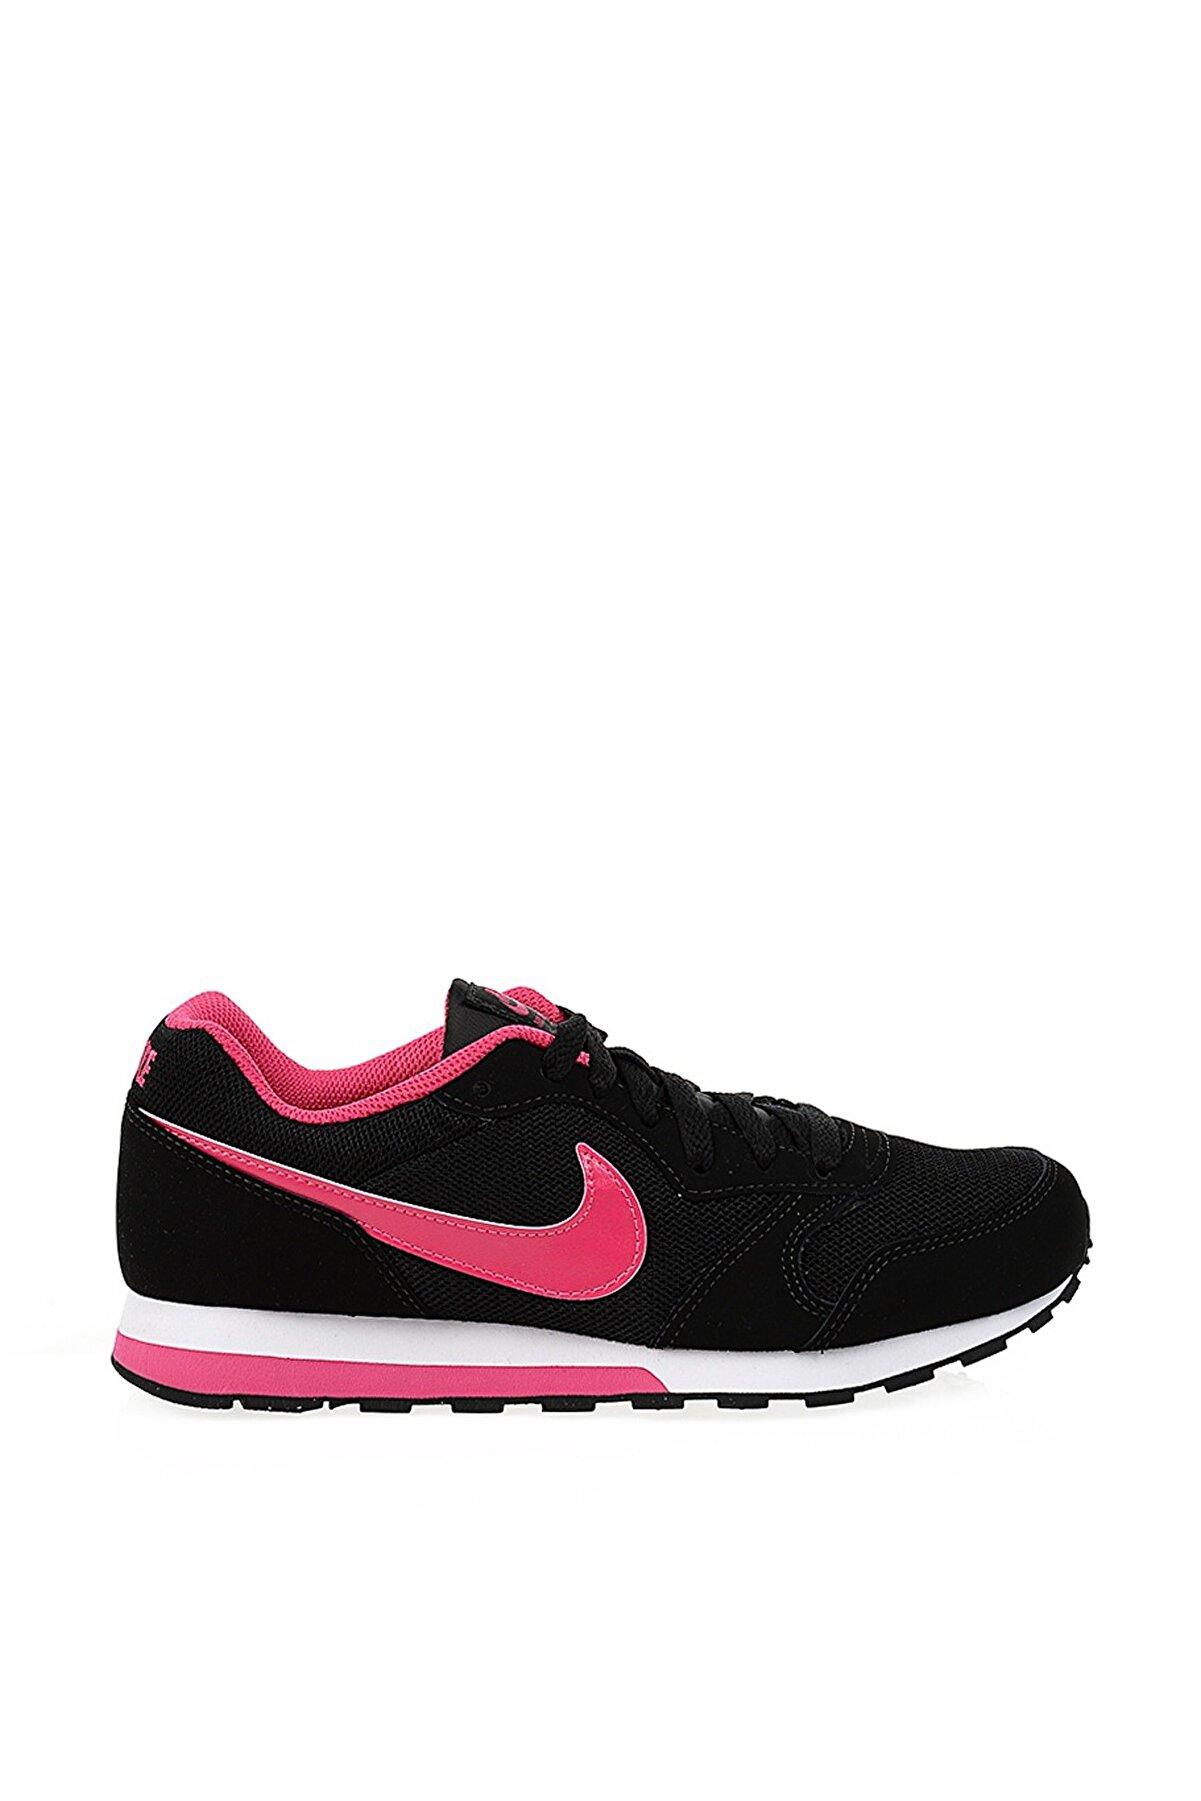 Nike MD RUNNER 2 Kadın Siyah Günlük Ayakkabı 807319-006